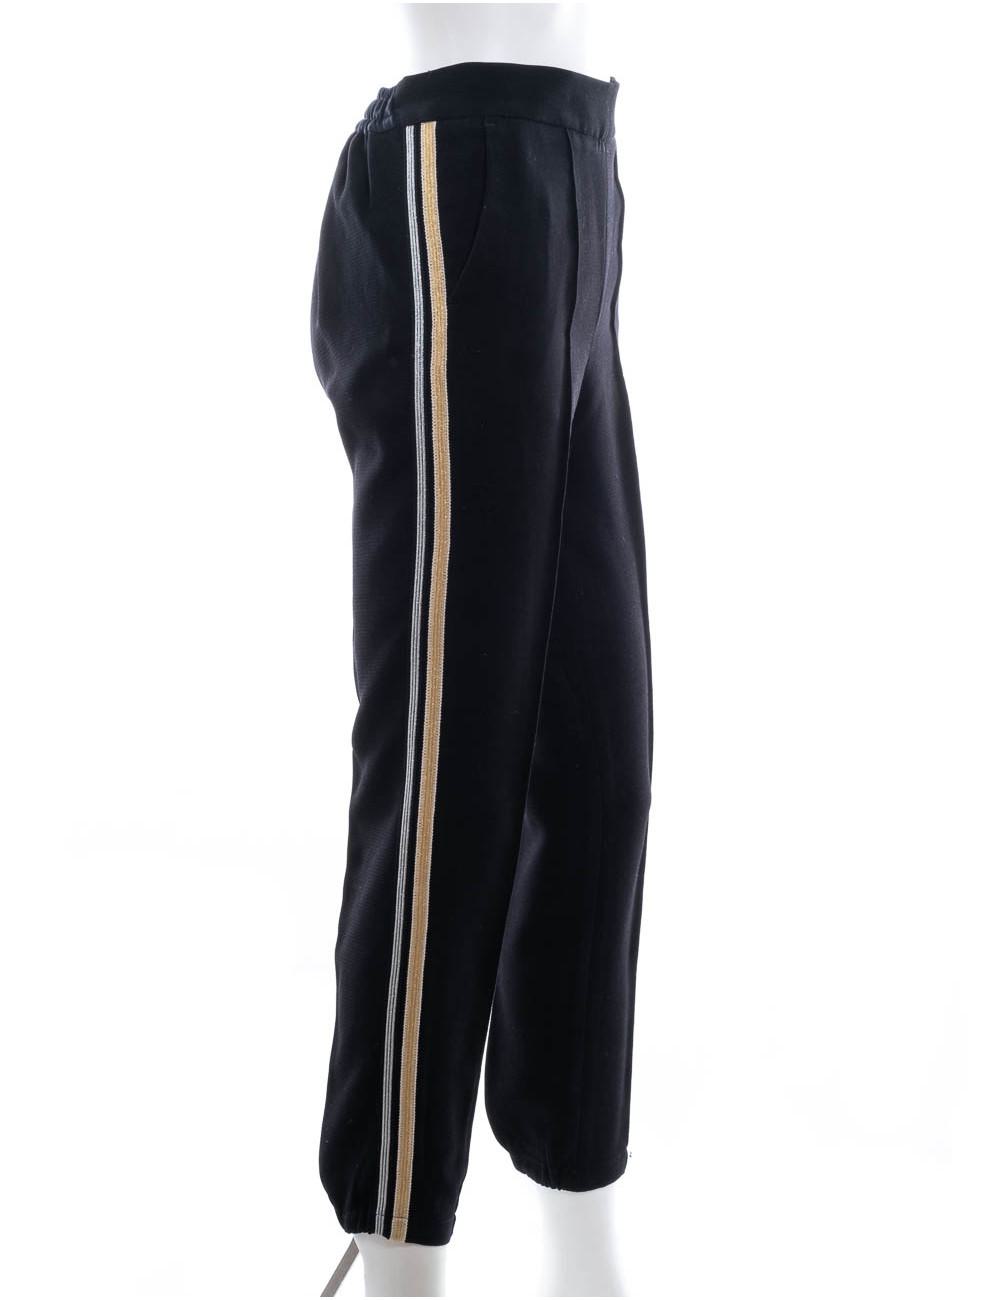 Asos Skinny Suit Pants In Black With Gold Brocade Side Stripe 64  Asos   Lookastic